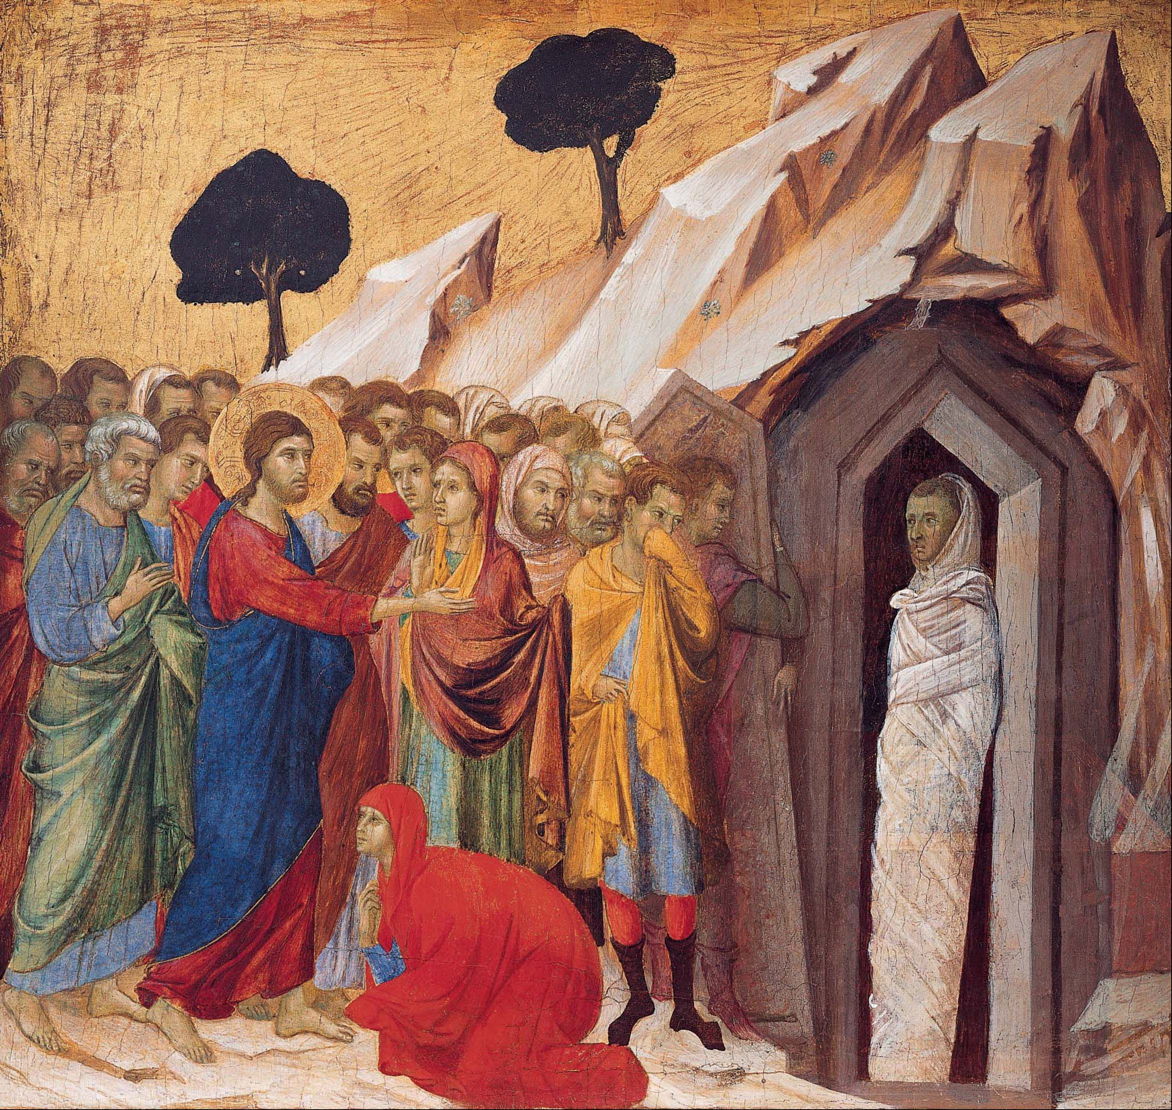 "The Raising of Lazarus" by Duccio di Buoninsegna
